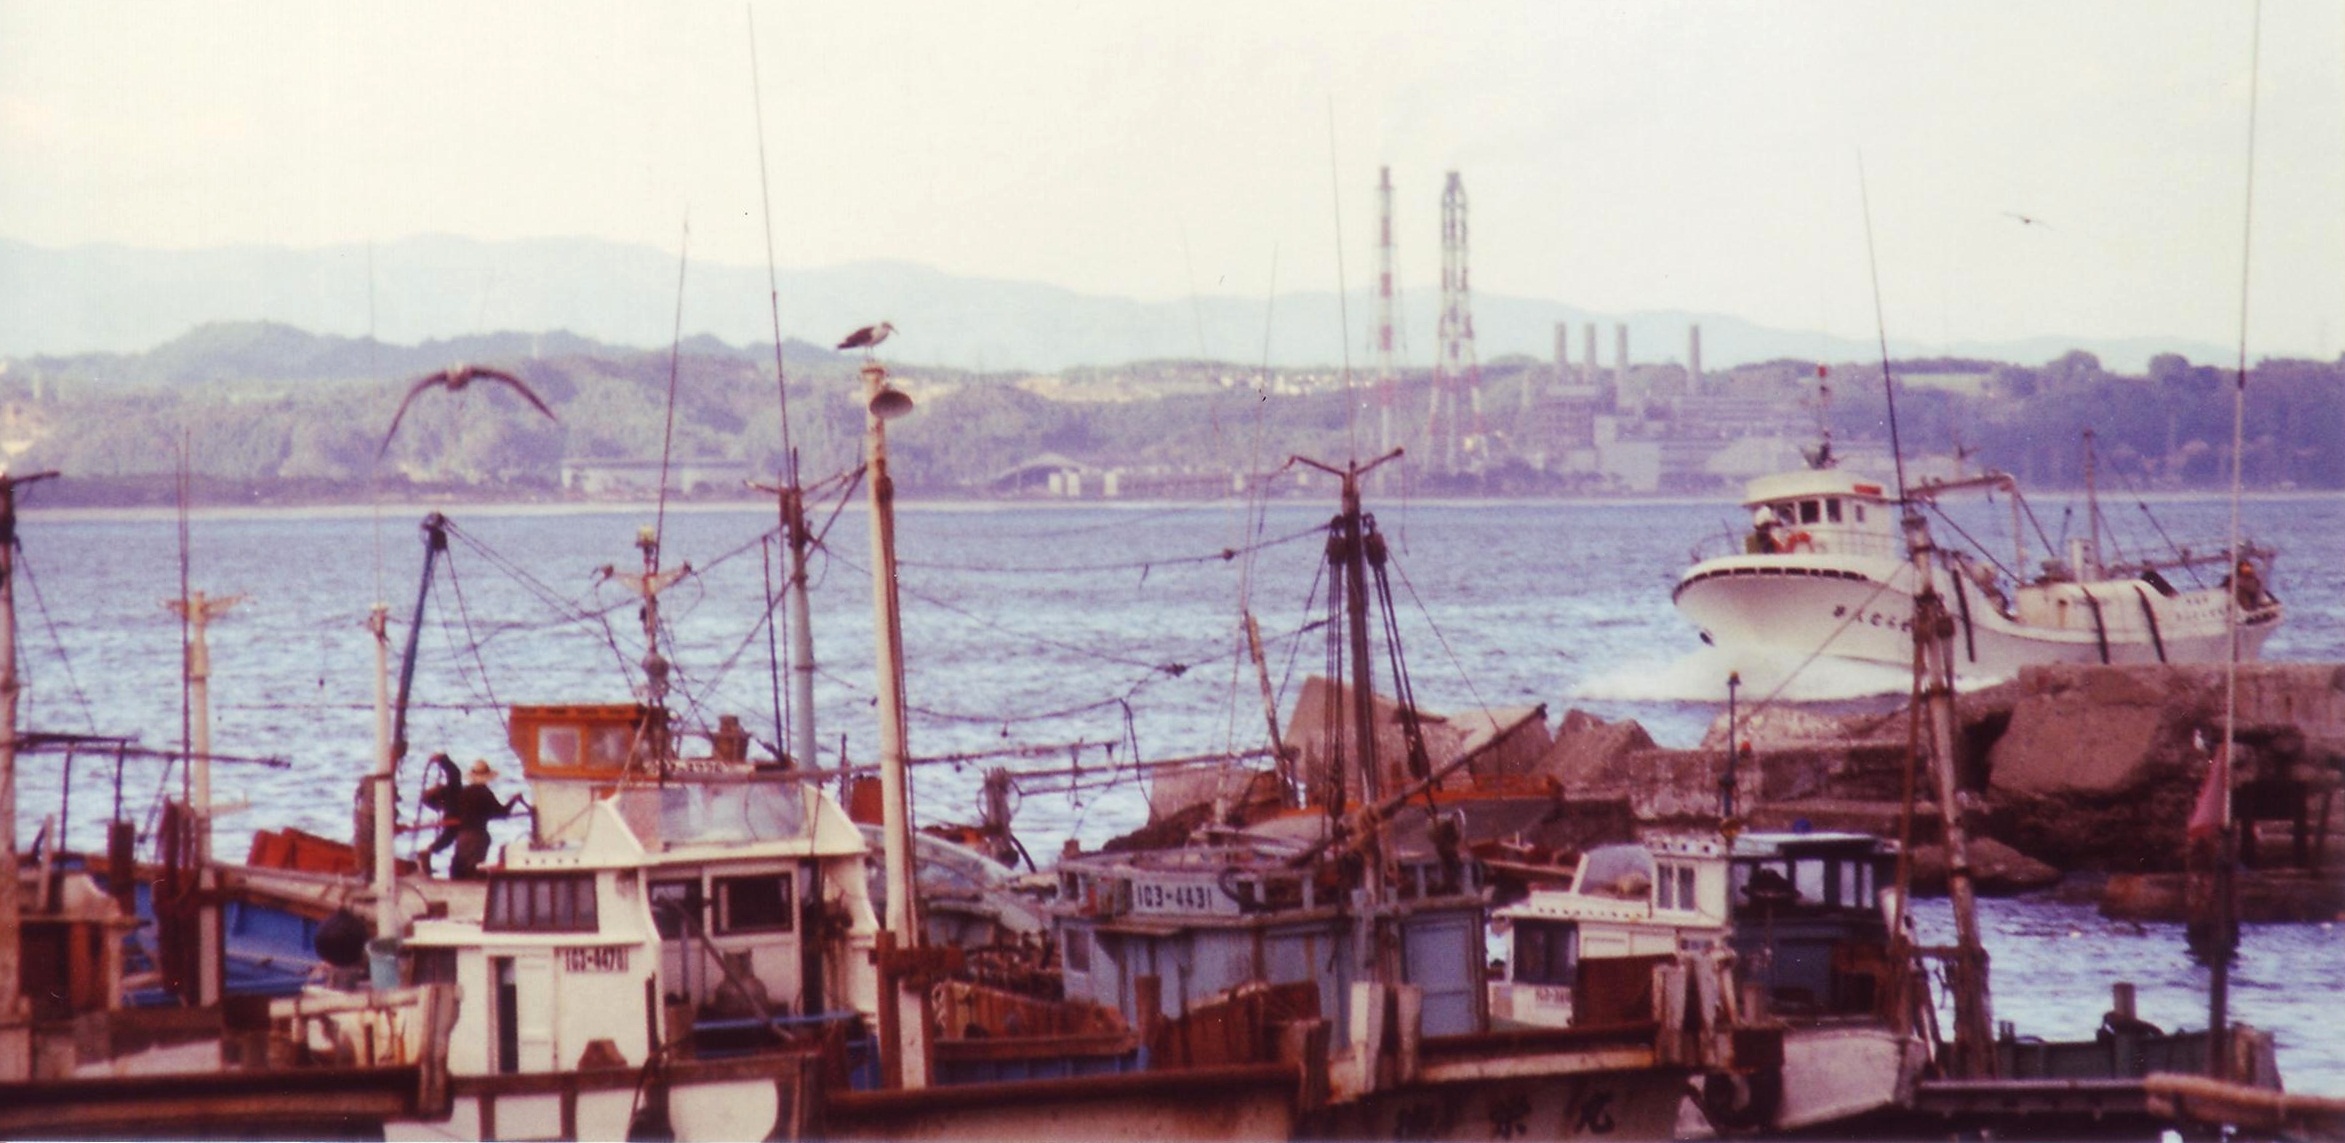 06 小浜漁港の船群(昭和50年代、佐藤信夫氏撮影)